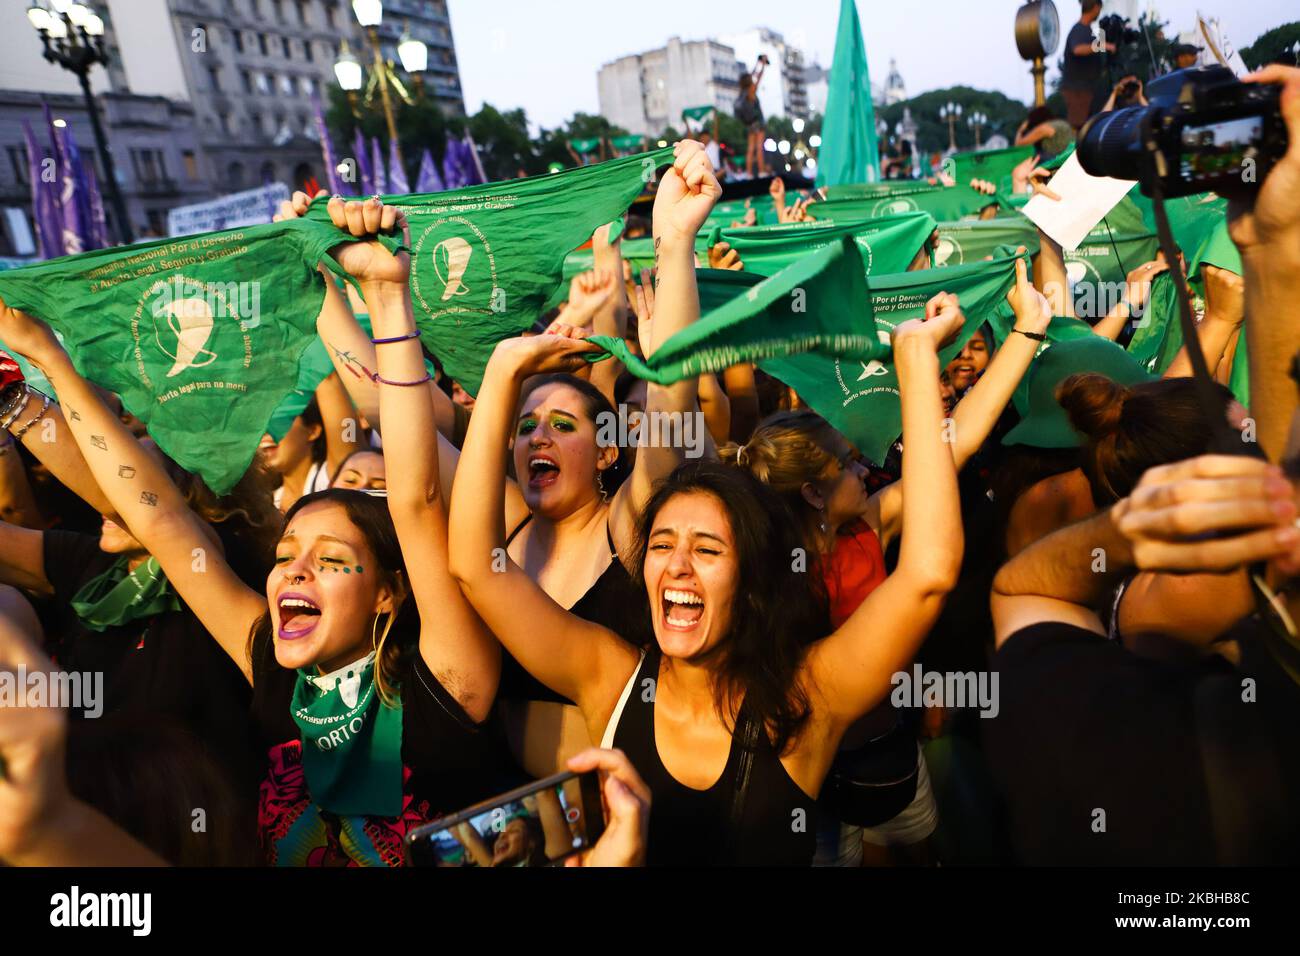 Pro-Aktivisten für legale Abtreibungen rufen während einer Demonstration als Teil eines grünen 'pañuelazo' Slogans für legale Abtreibung auf, um das Recht auf legale, sichere und freie Abtreibung außerhalb des Nationalkongresses zu fordern. Am 19. Februar 2020 in Buenos Aires, Argentinien. (Foto von Matías Baglietto/NurPhoto) Stockfoto